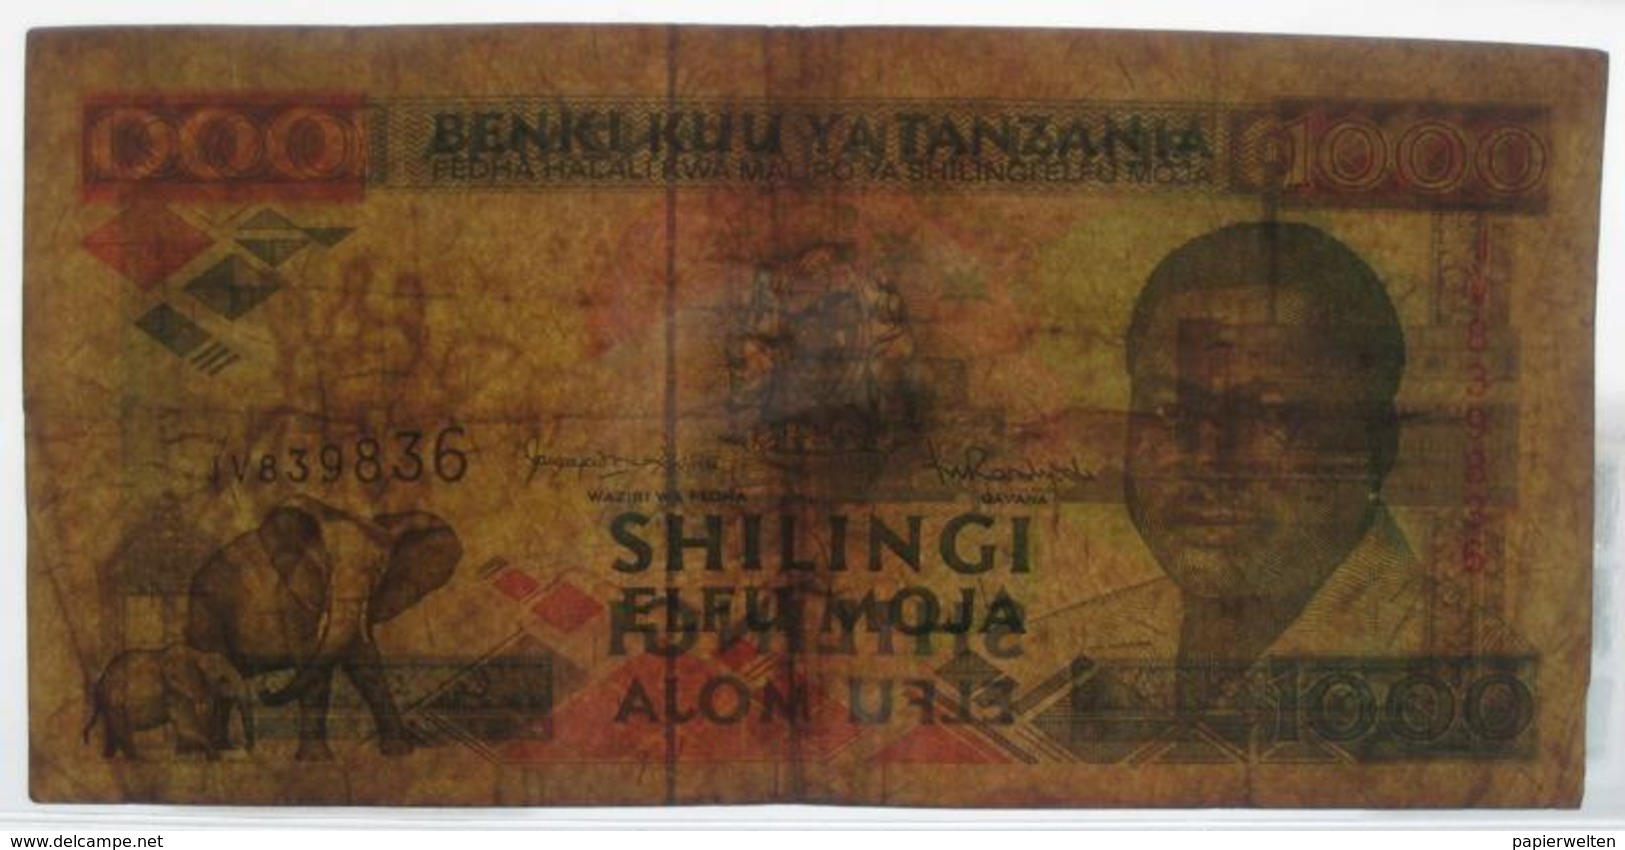 1000 / Elfu Moja Shilingi ND (WPM 27c) - Tanzania